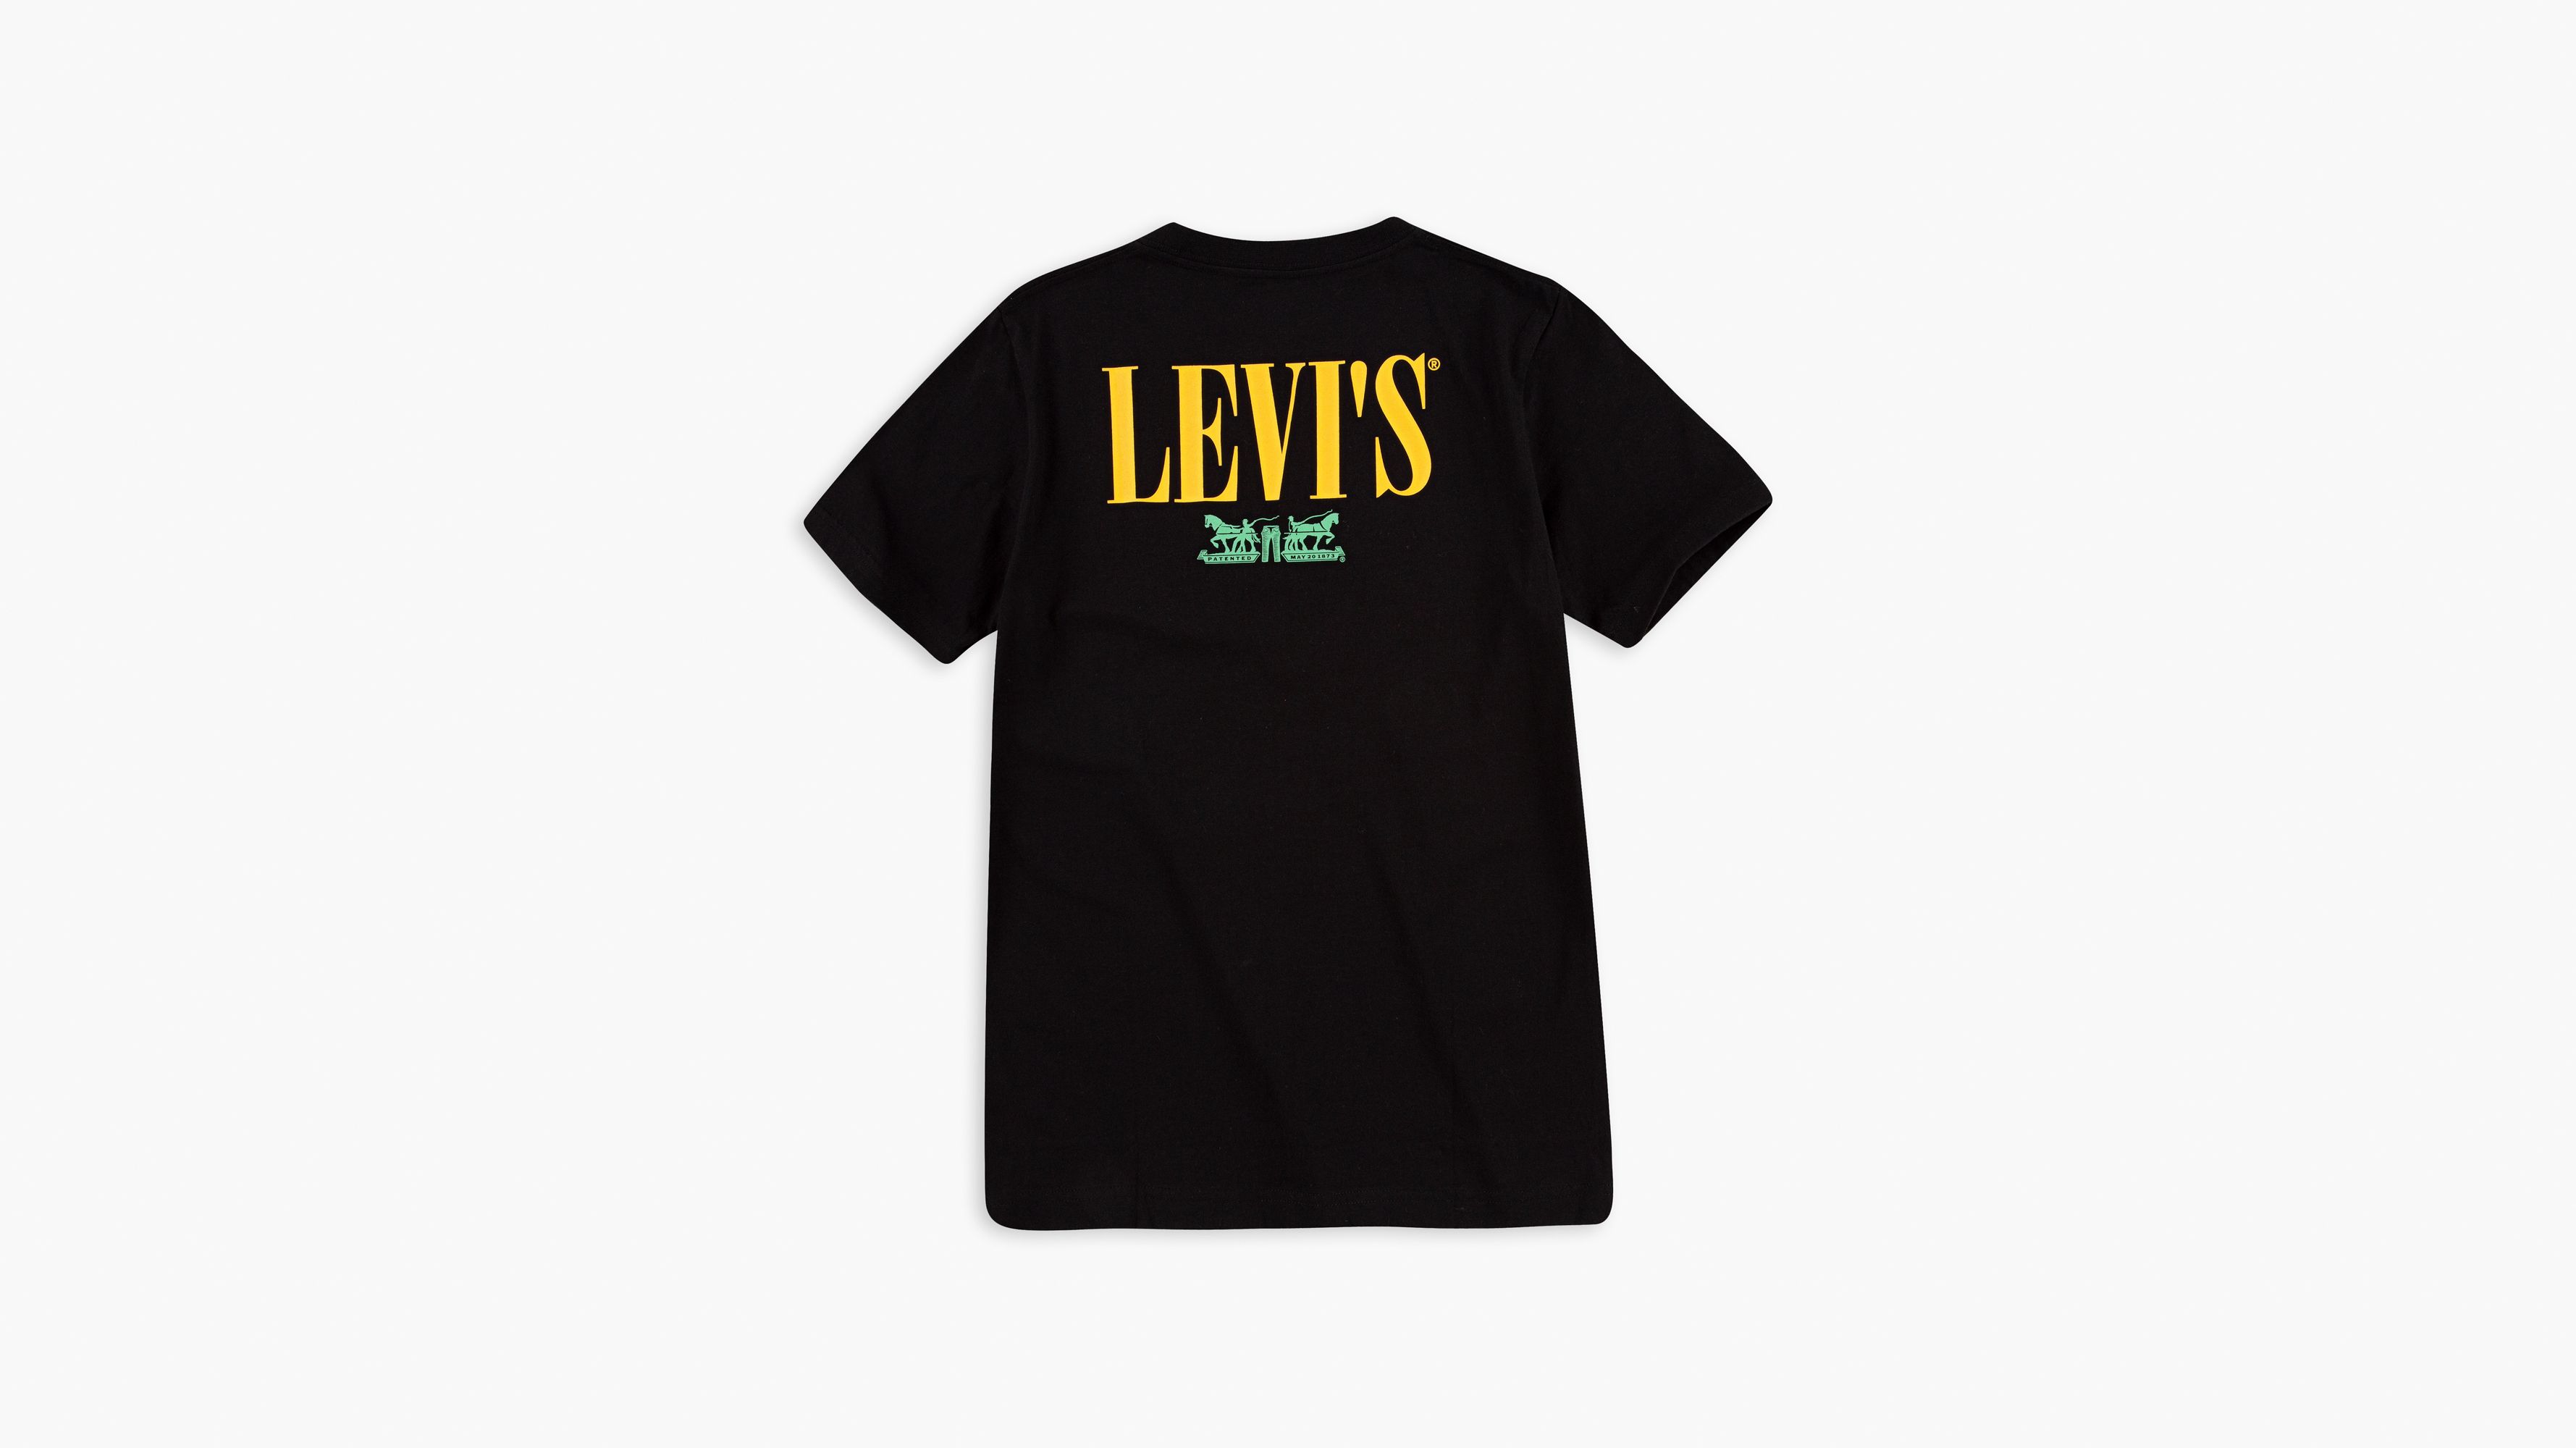 levis boys tshirt